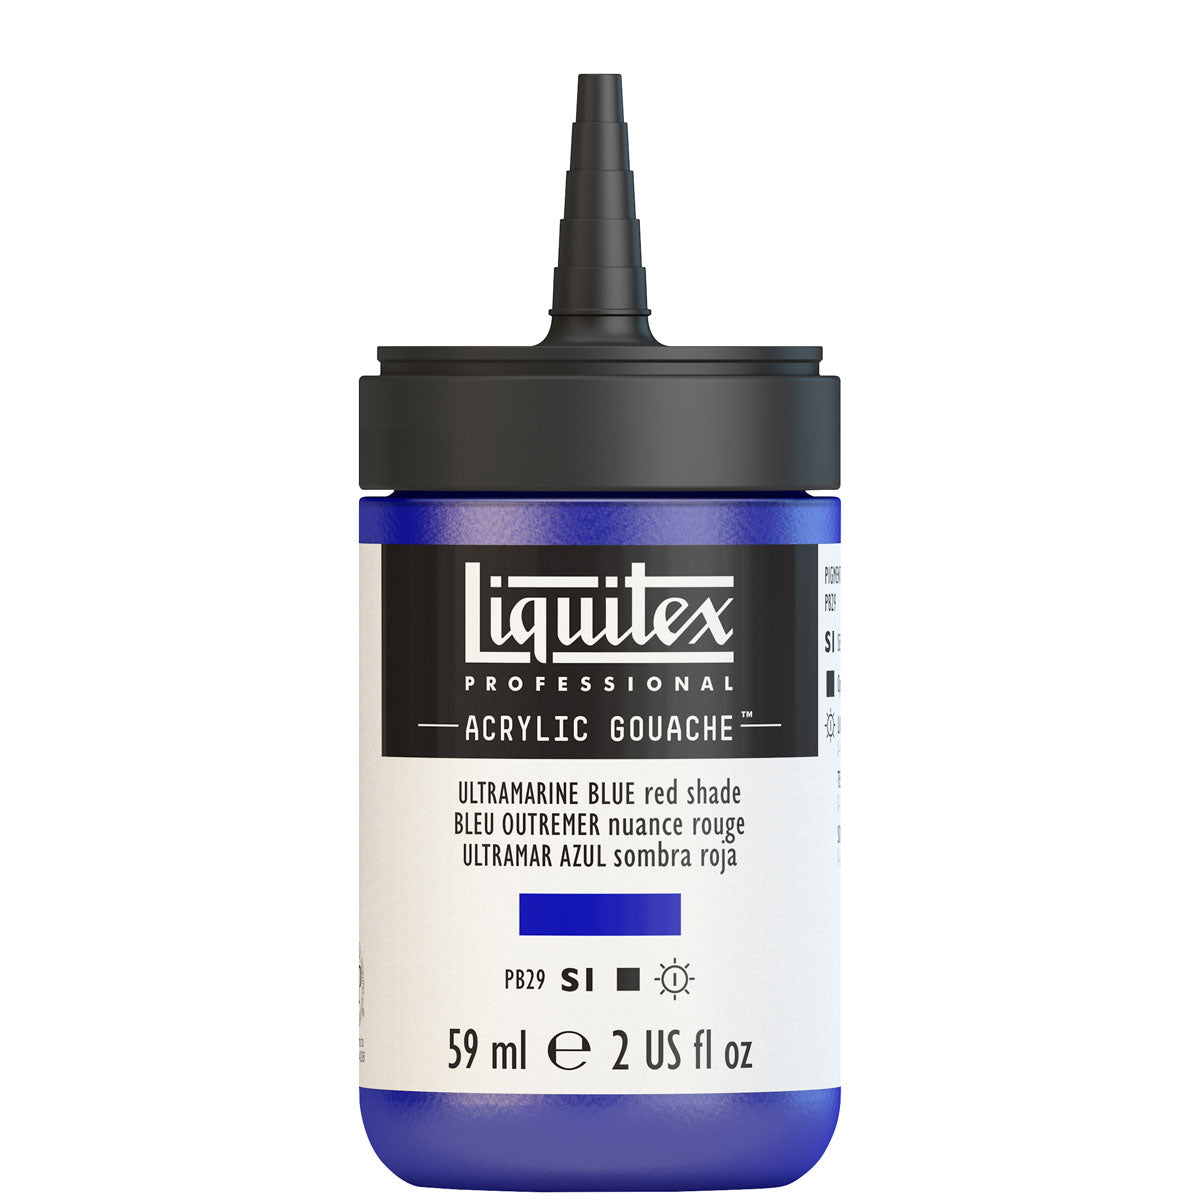 Liquitex - Acryl Gouache 59ml S1 - Ultramarine Blue Red Shade